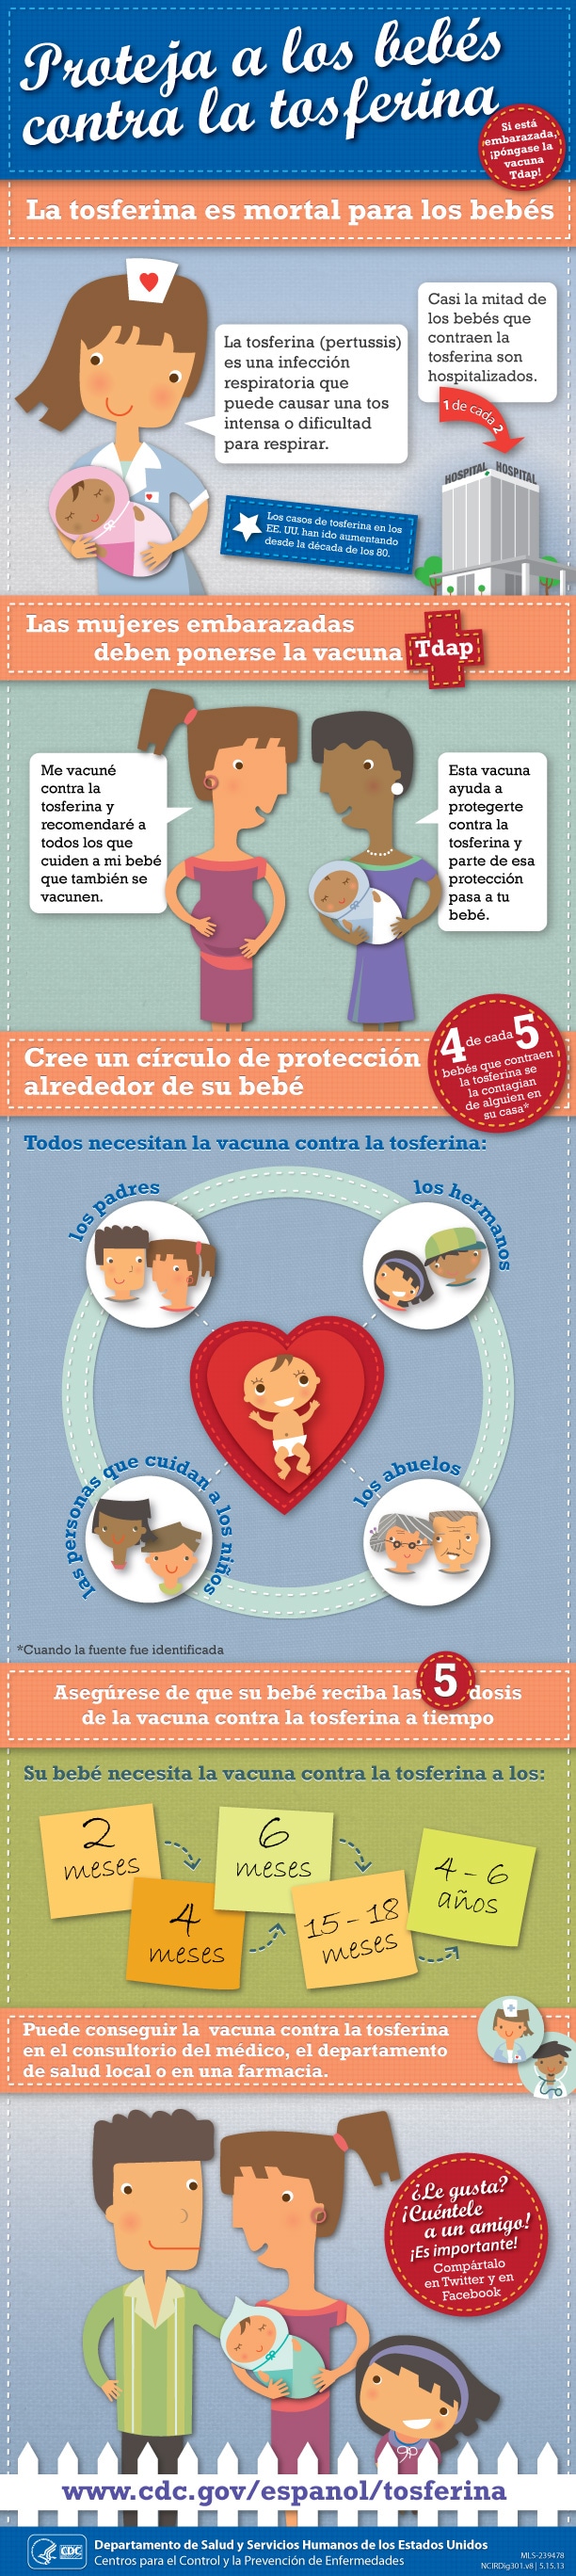 Proteja a los beb%26eacute;s contra la tosferina - infographic